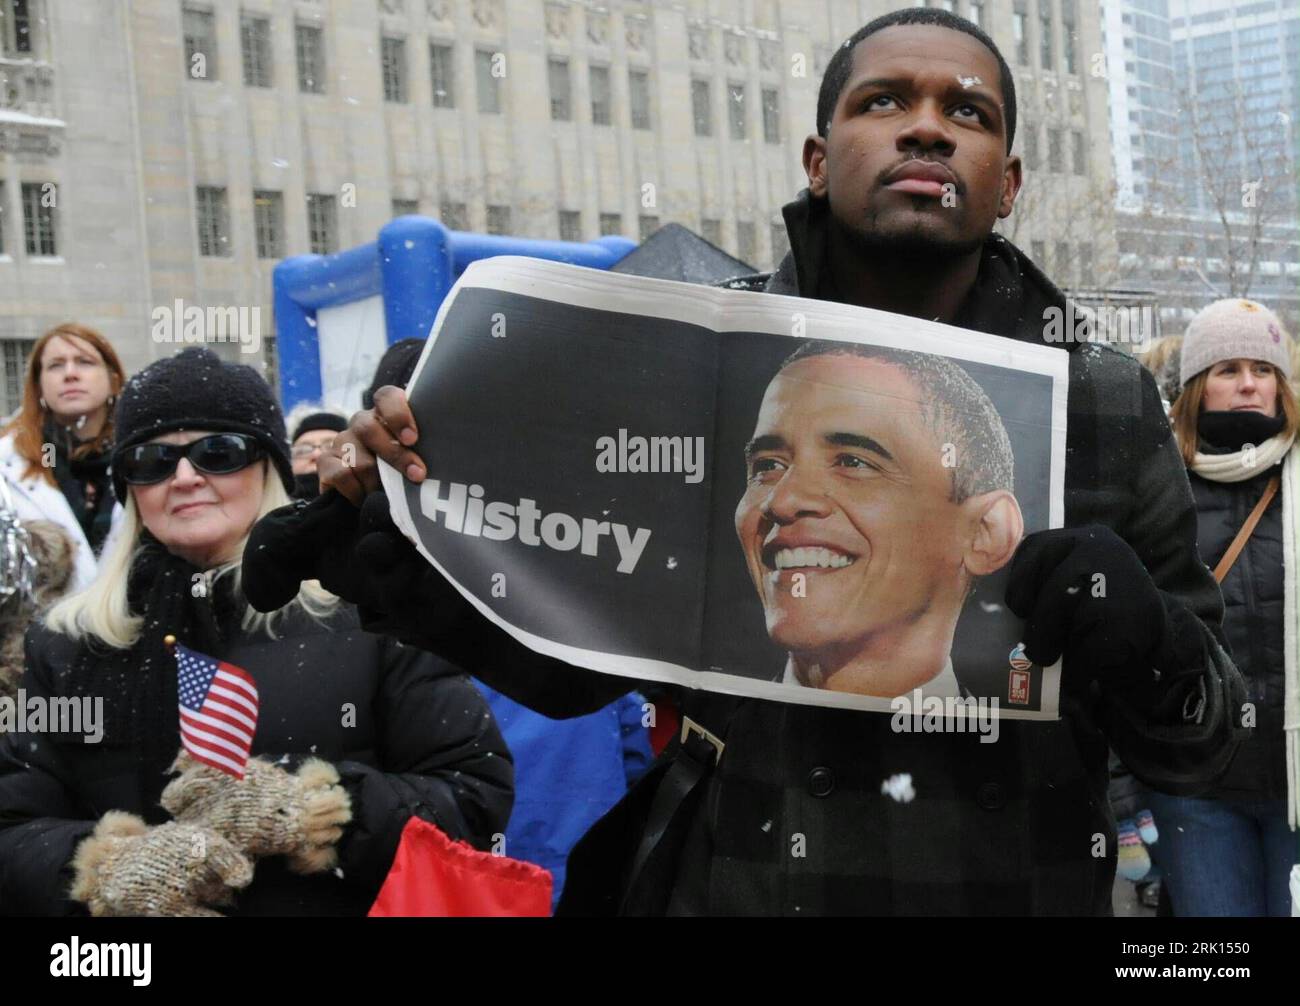 Zuschauer mit Barack Obama-Portrait - Histoire - während dessen Vereidigung zum 44. Präsidenten der Vereinigten Staaten von Amerika in Washington PUBLICATIONxNOTxINxCHN Banque D'Images